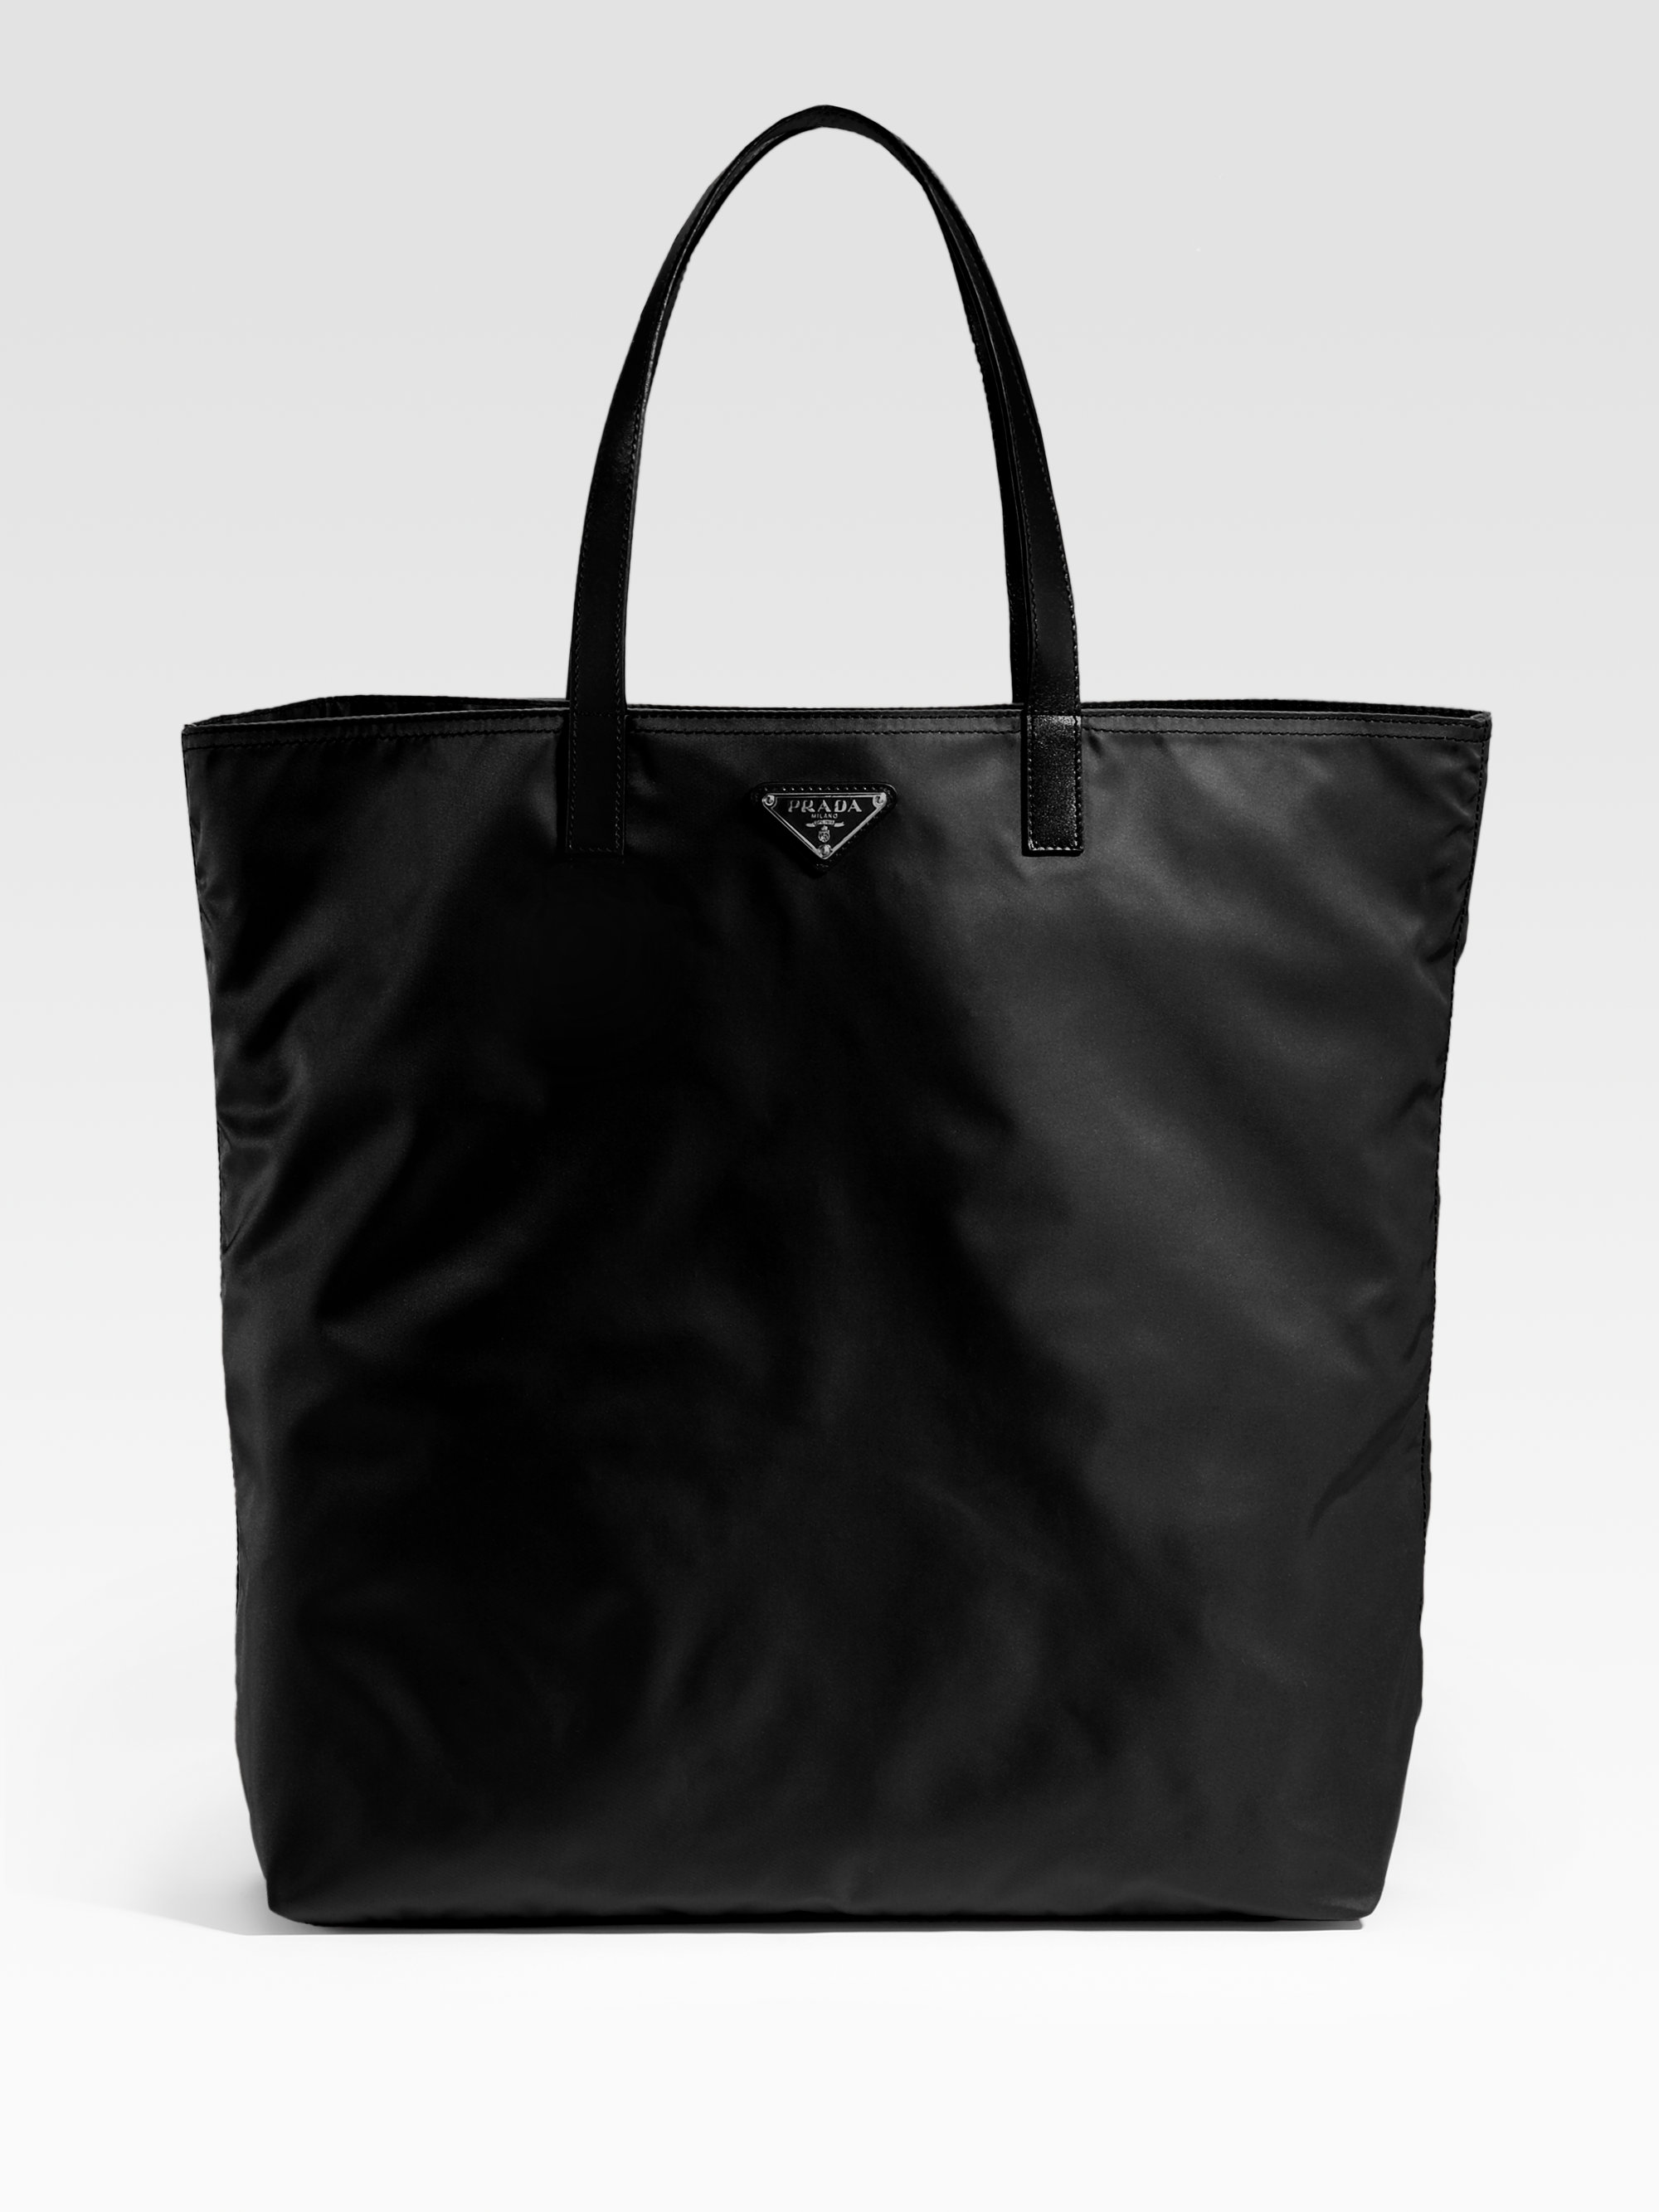 Prada Black Tote Handbags | semashow.com